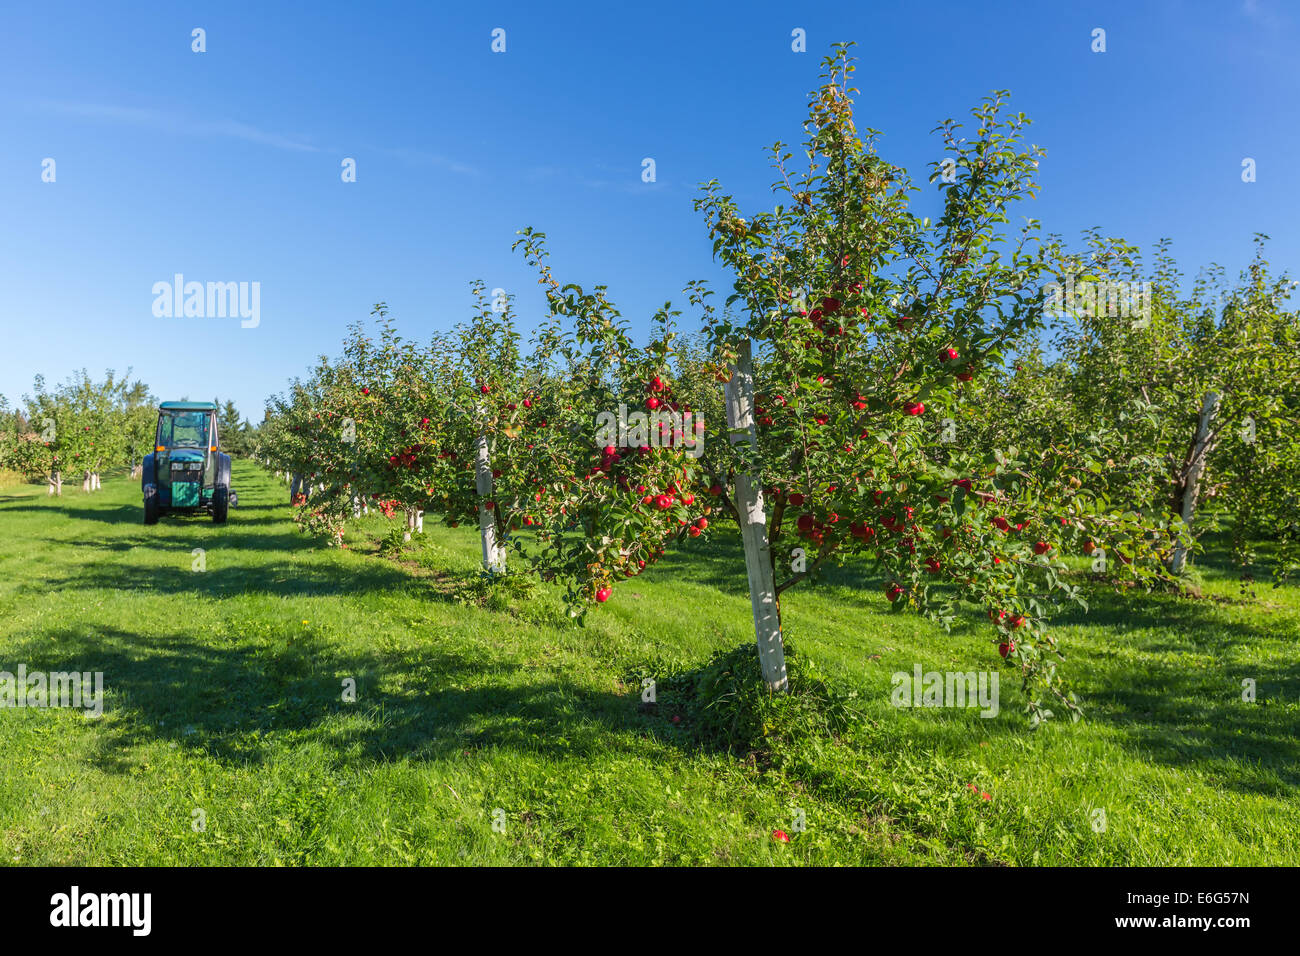 Los árboles con manzanas rojas maduras en una granja del huerto de manzanas. Foto de stock